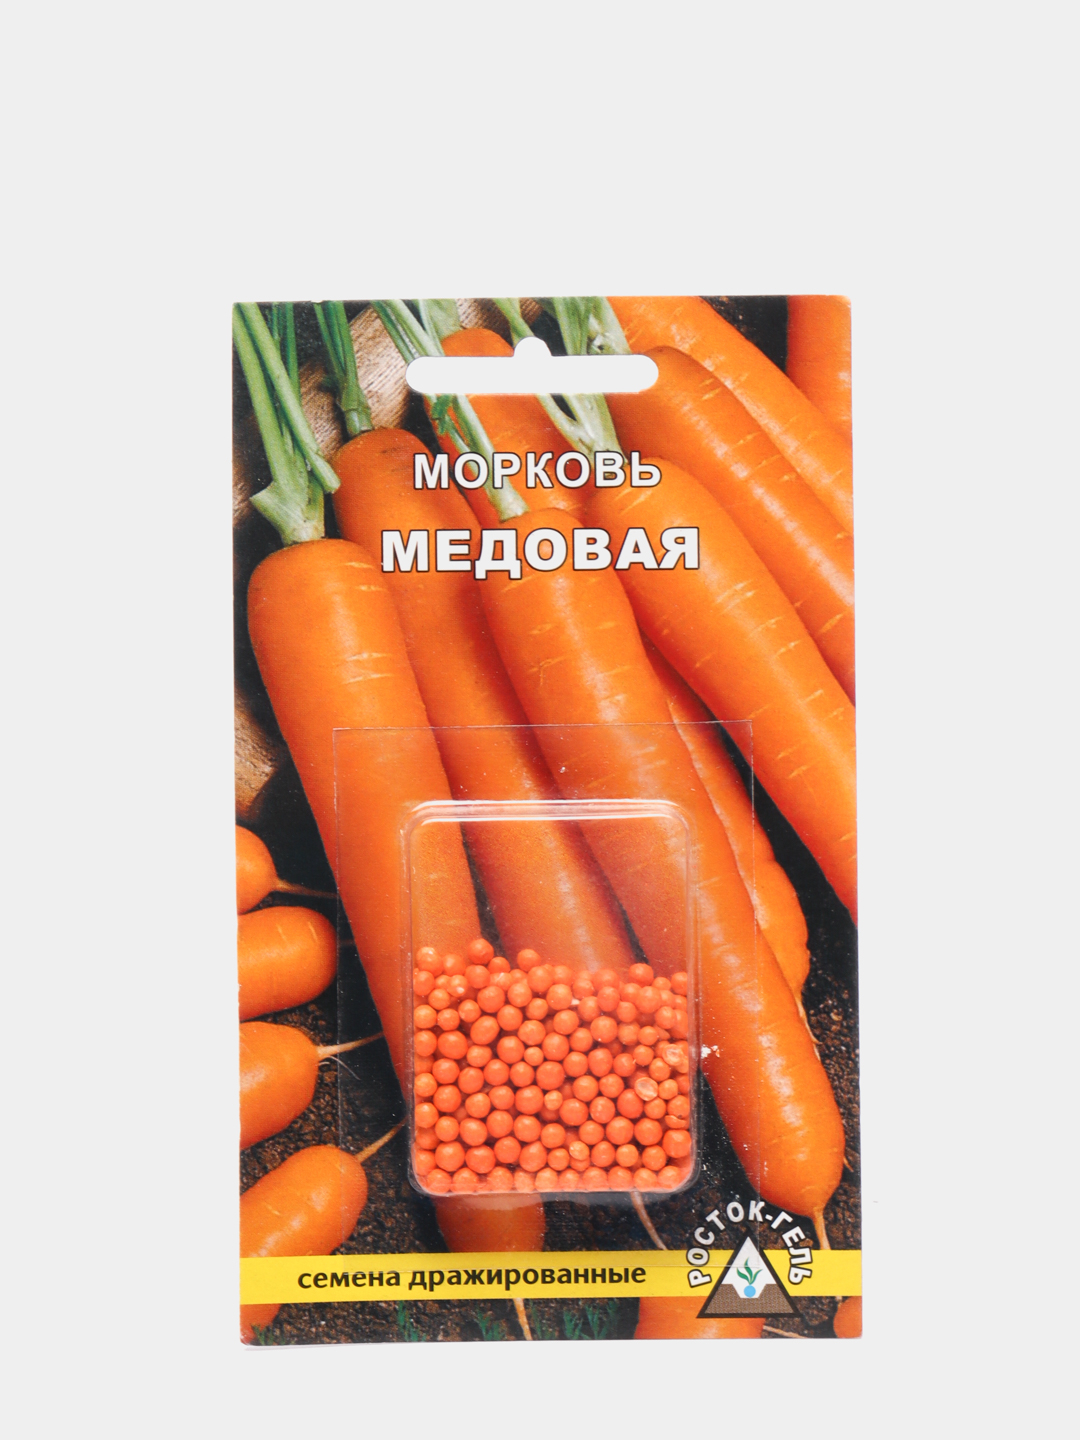 Можно ли употреблять в пищу морковь, которая зелёная внутри?